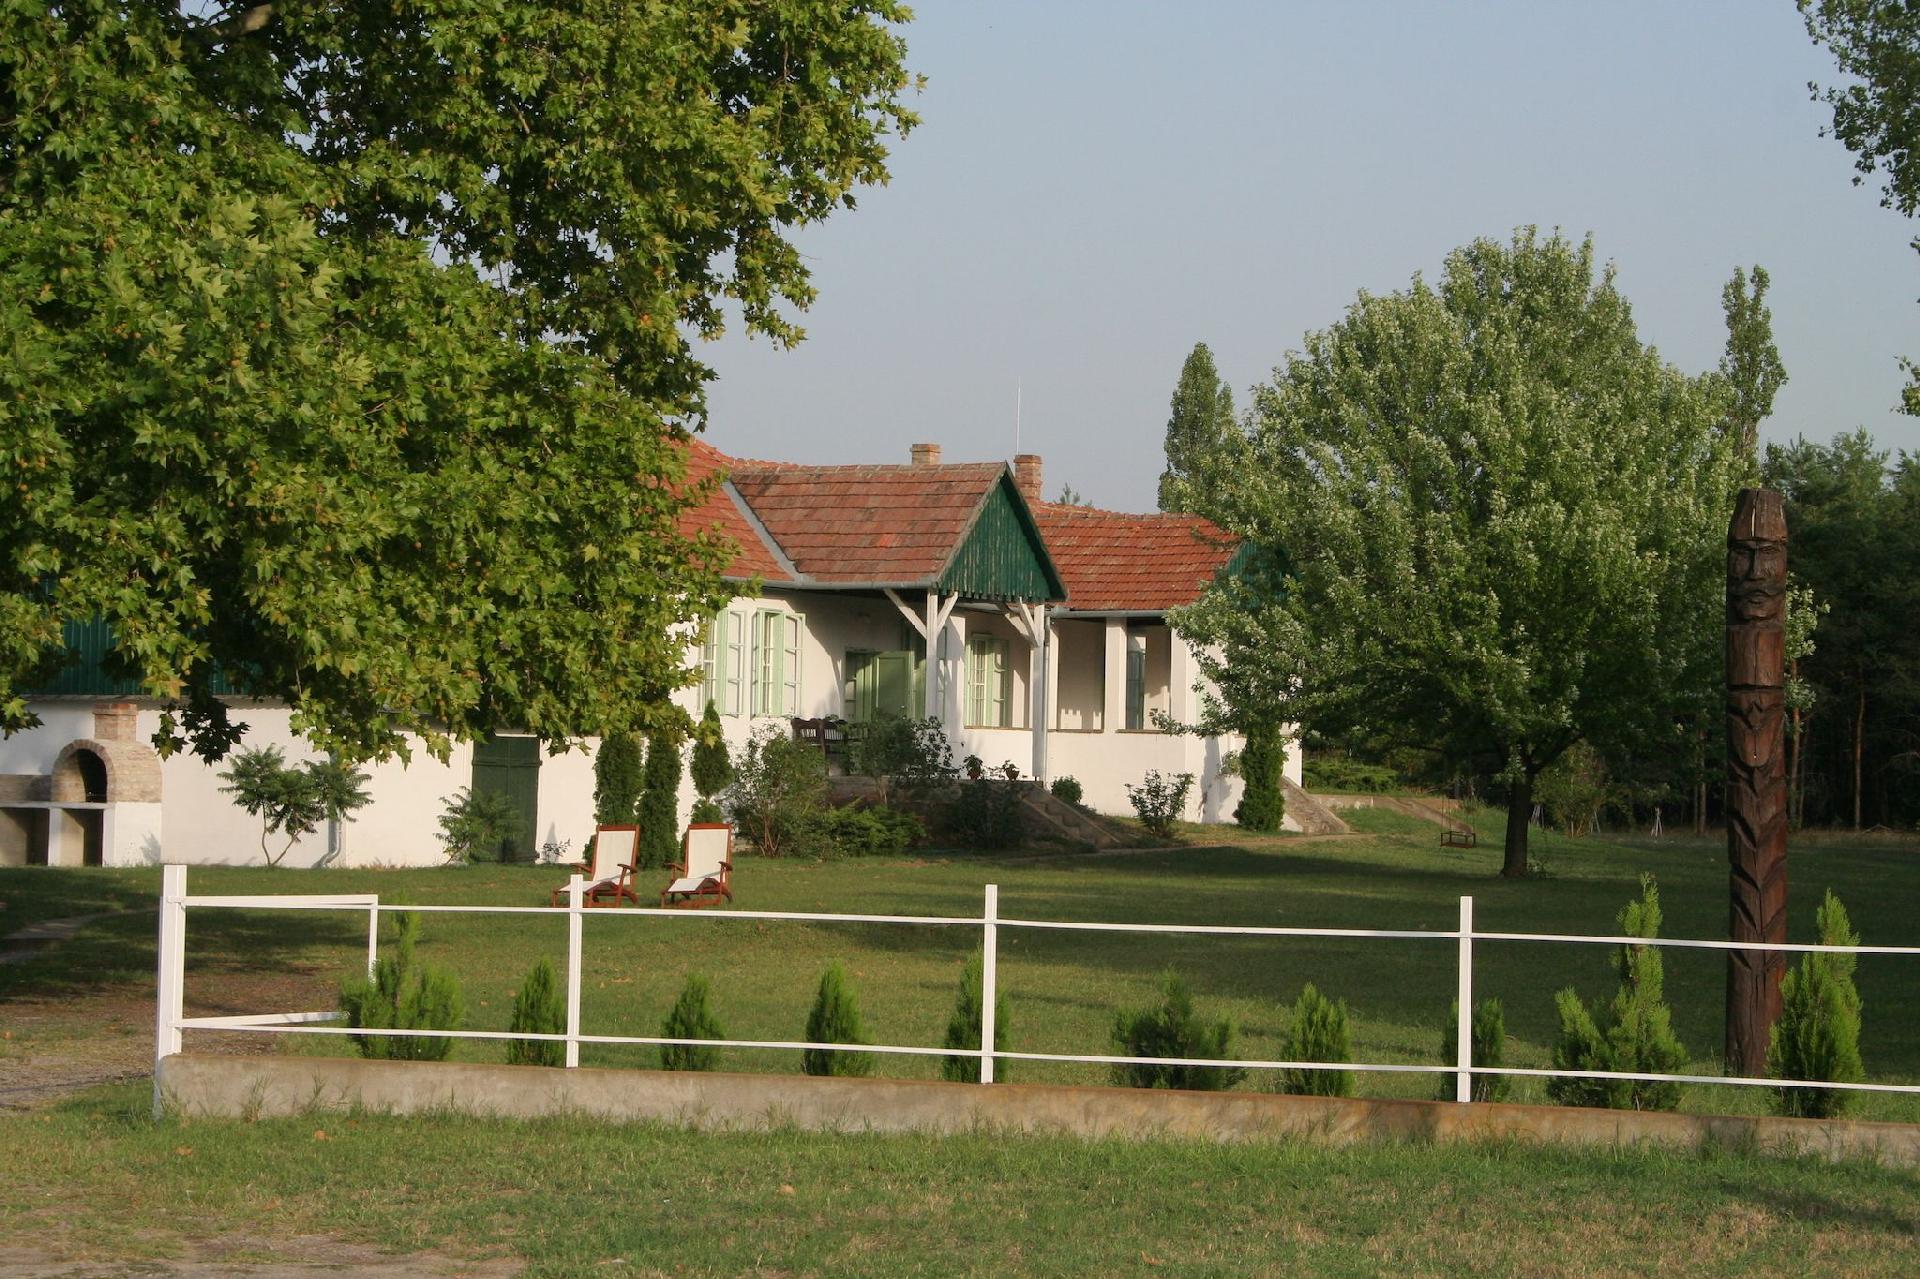 Typische Hütte in der ungarischen Landschaft Ferienhaus in Ungarn